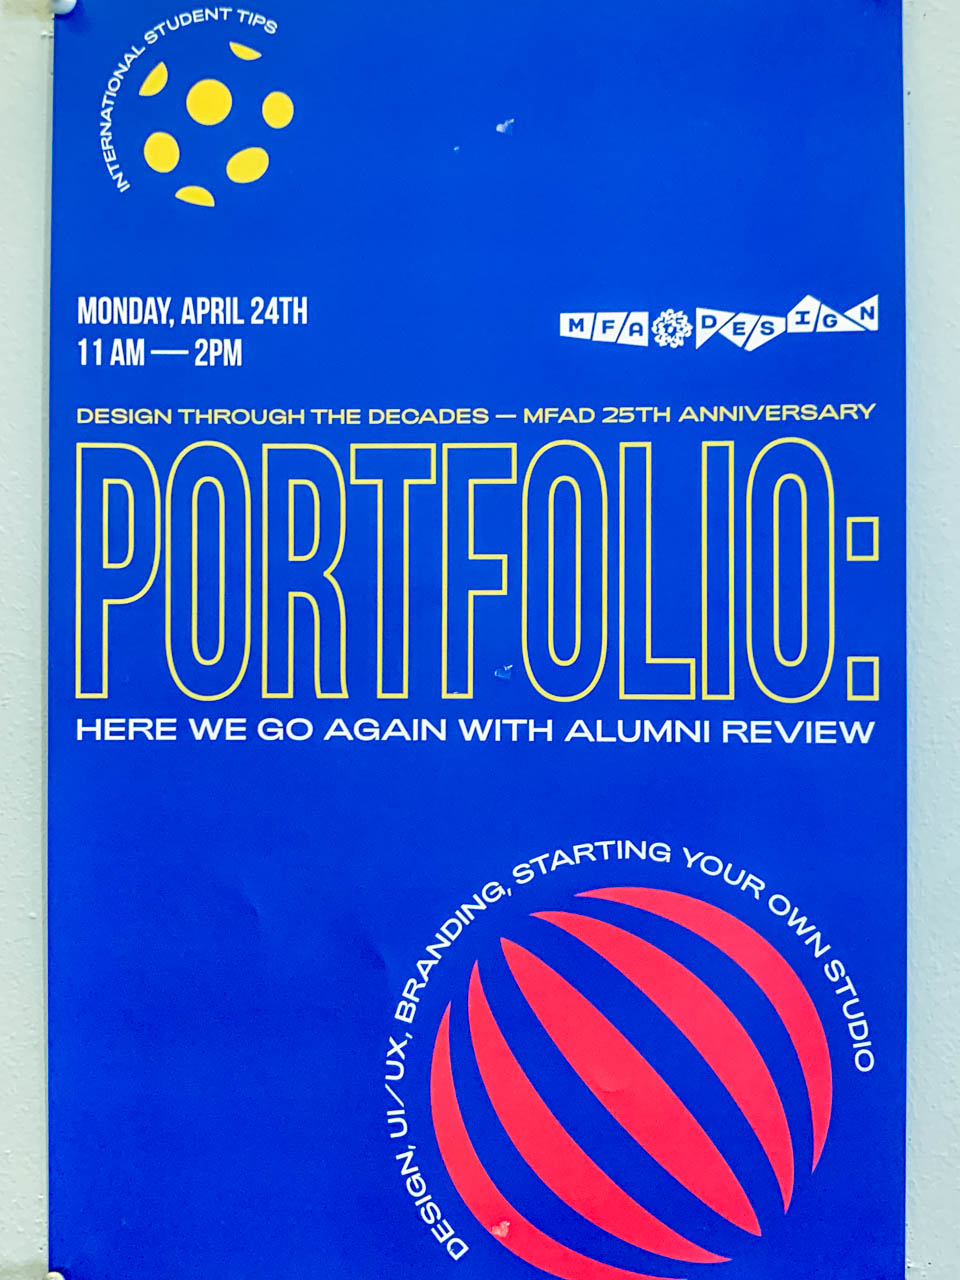 sign for Portfolio review